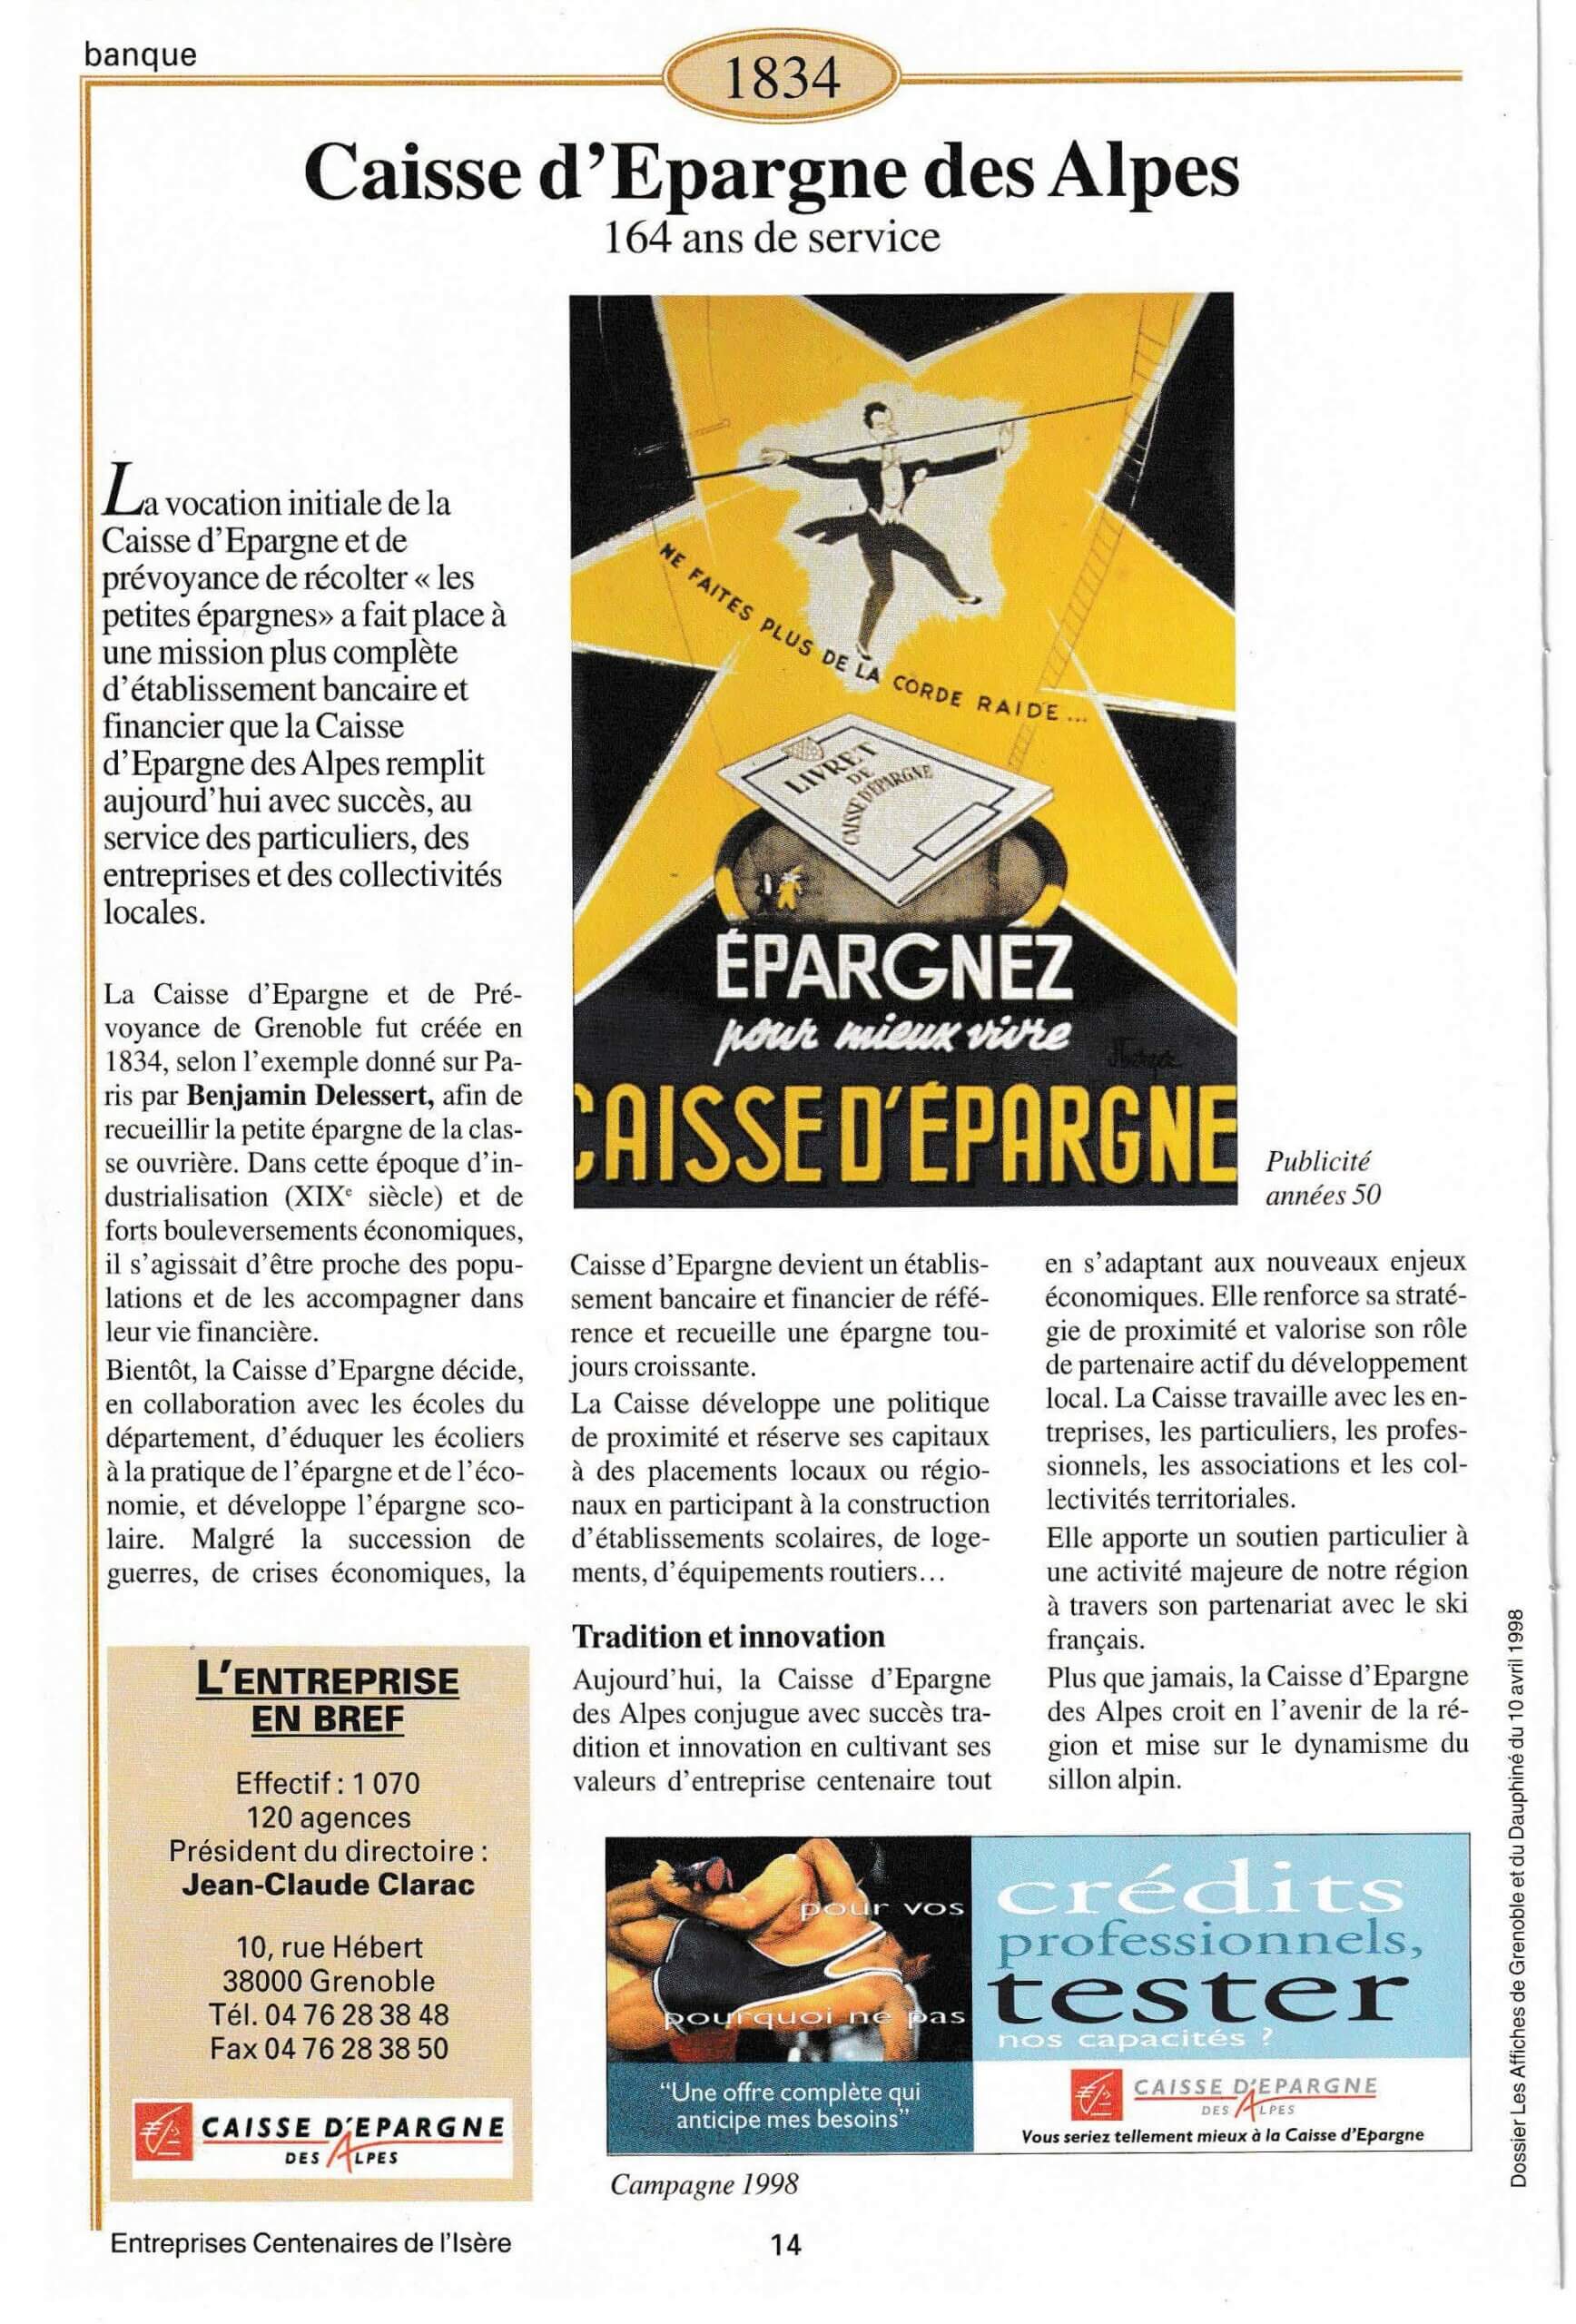 Caisse d'Epargne des Alpes - - fiche du supplément "Entreprises centenaires en Isère", publié par Les affiches de Grenoble et du Dauphiné, juin 1998.